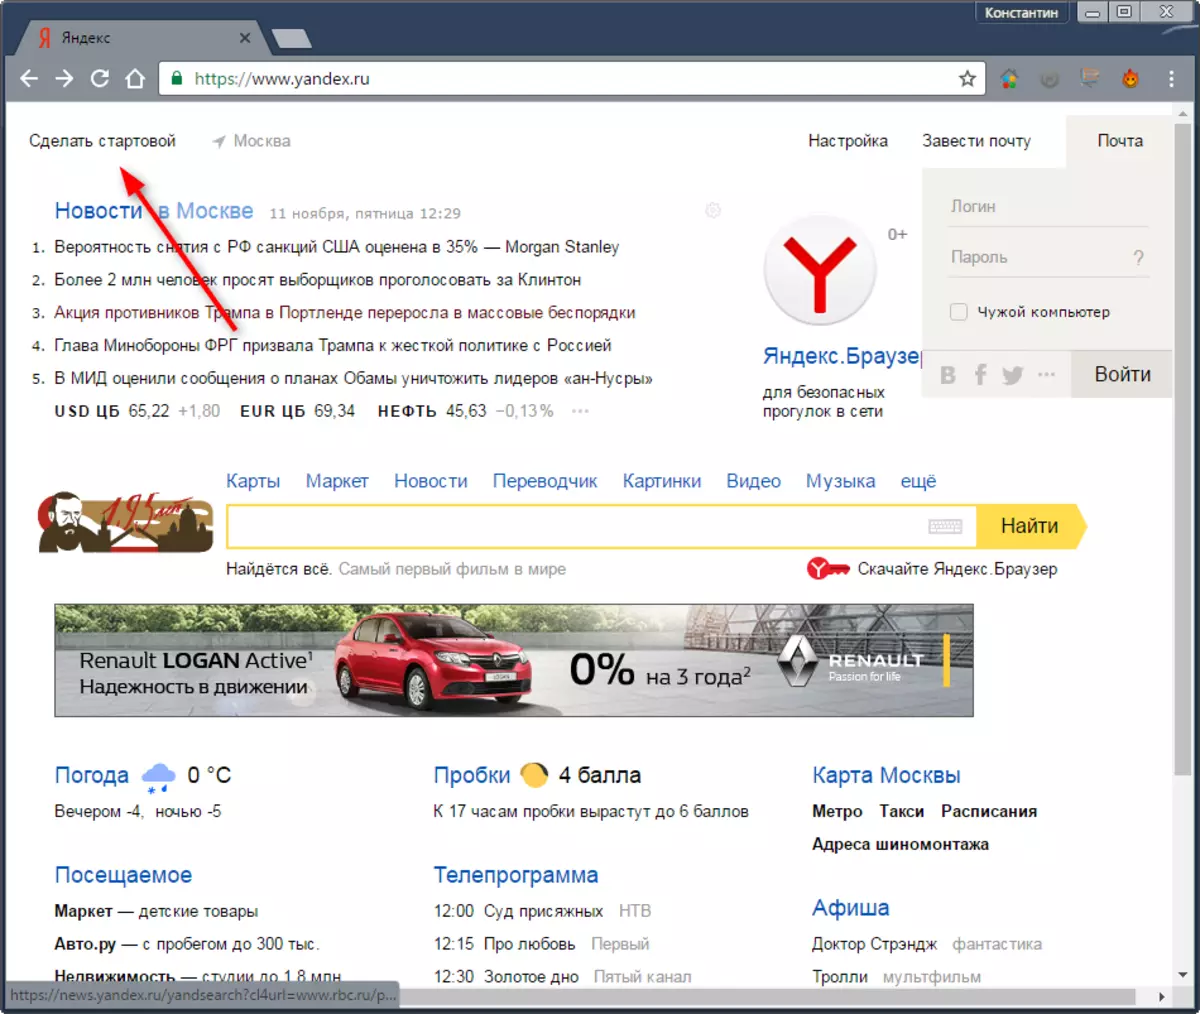 Yandex ആരംഭ പേജ് എങ്ങനെ നിർമ്മിക്കാം